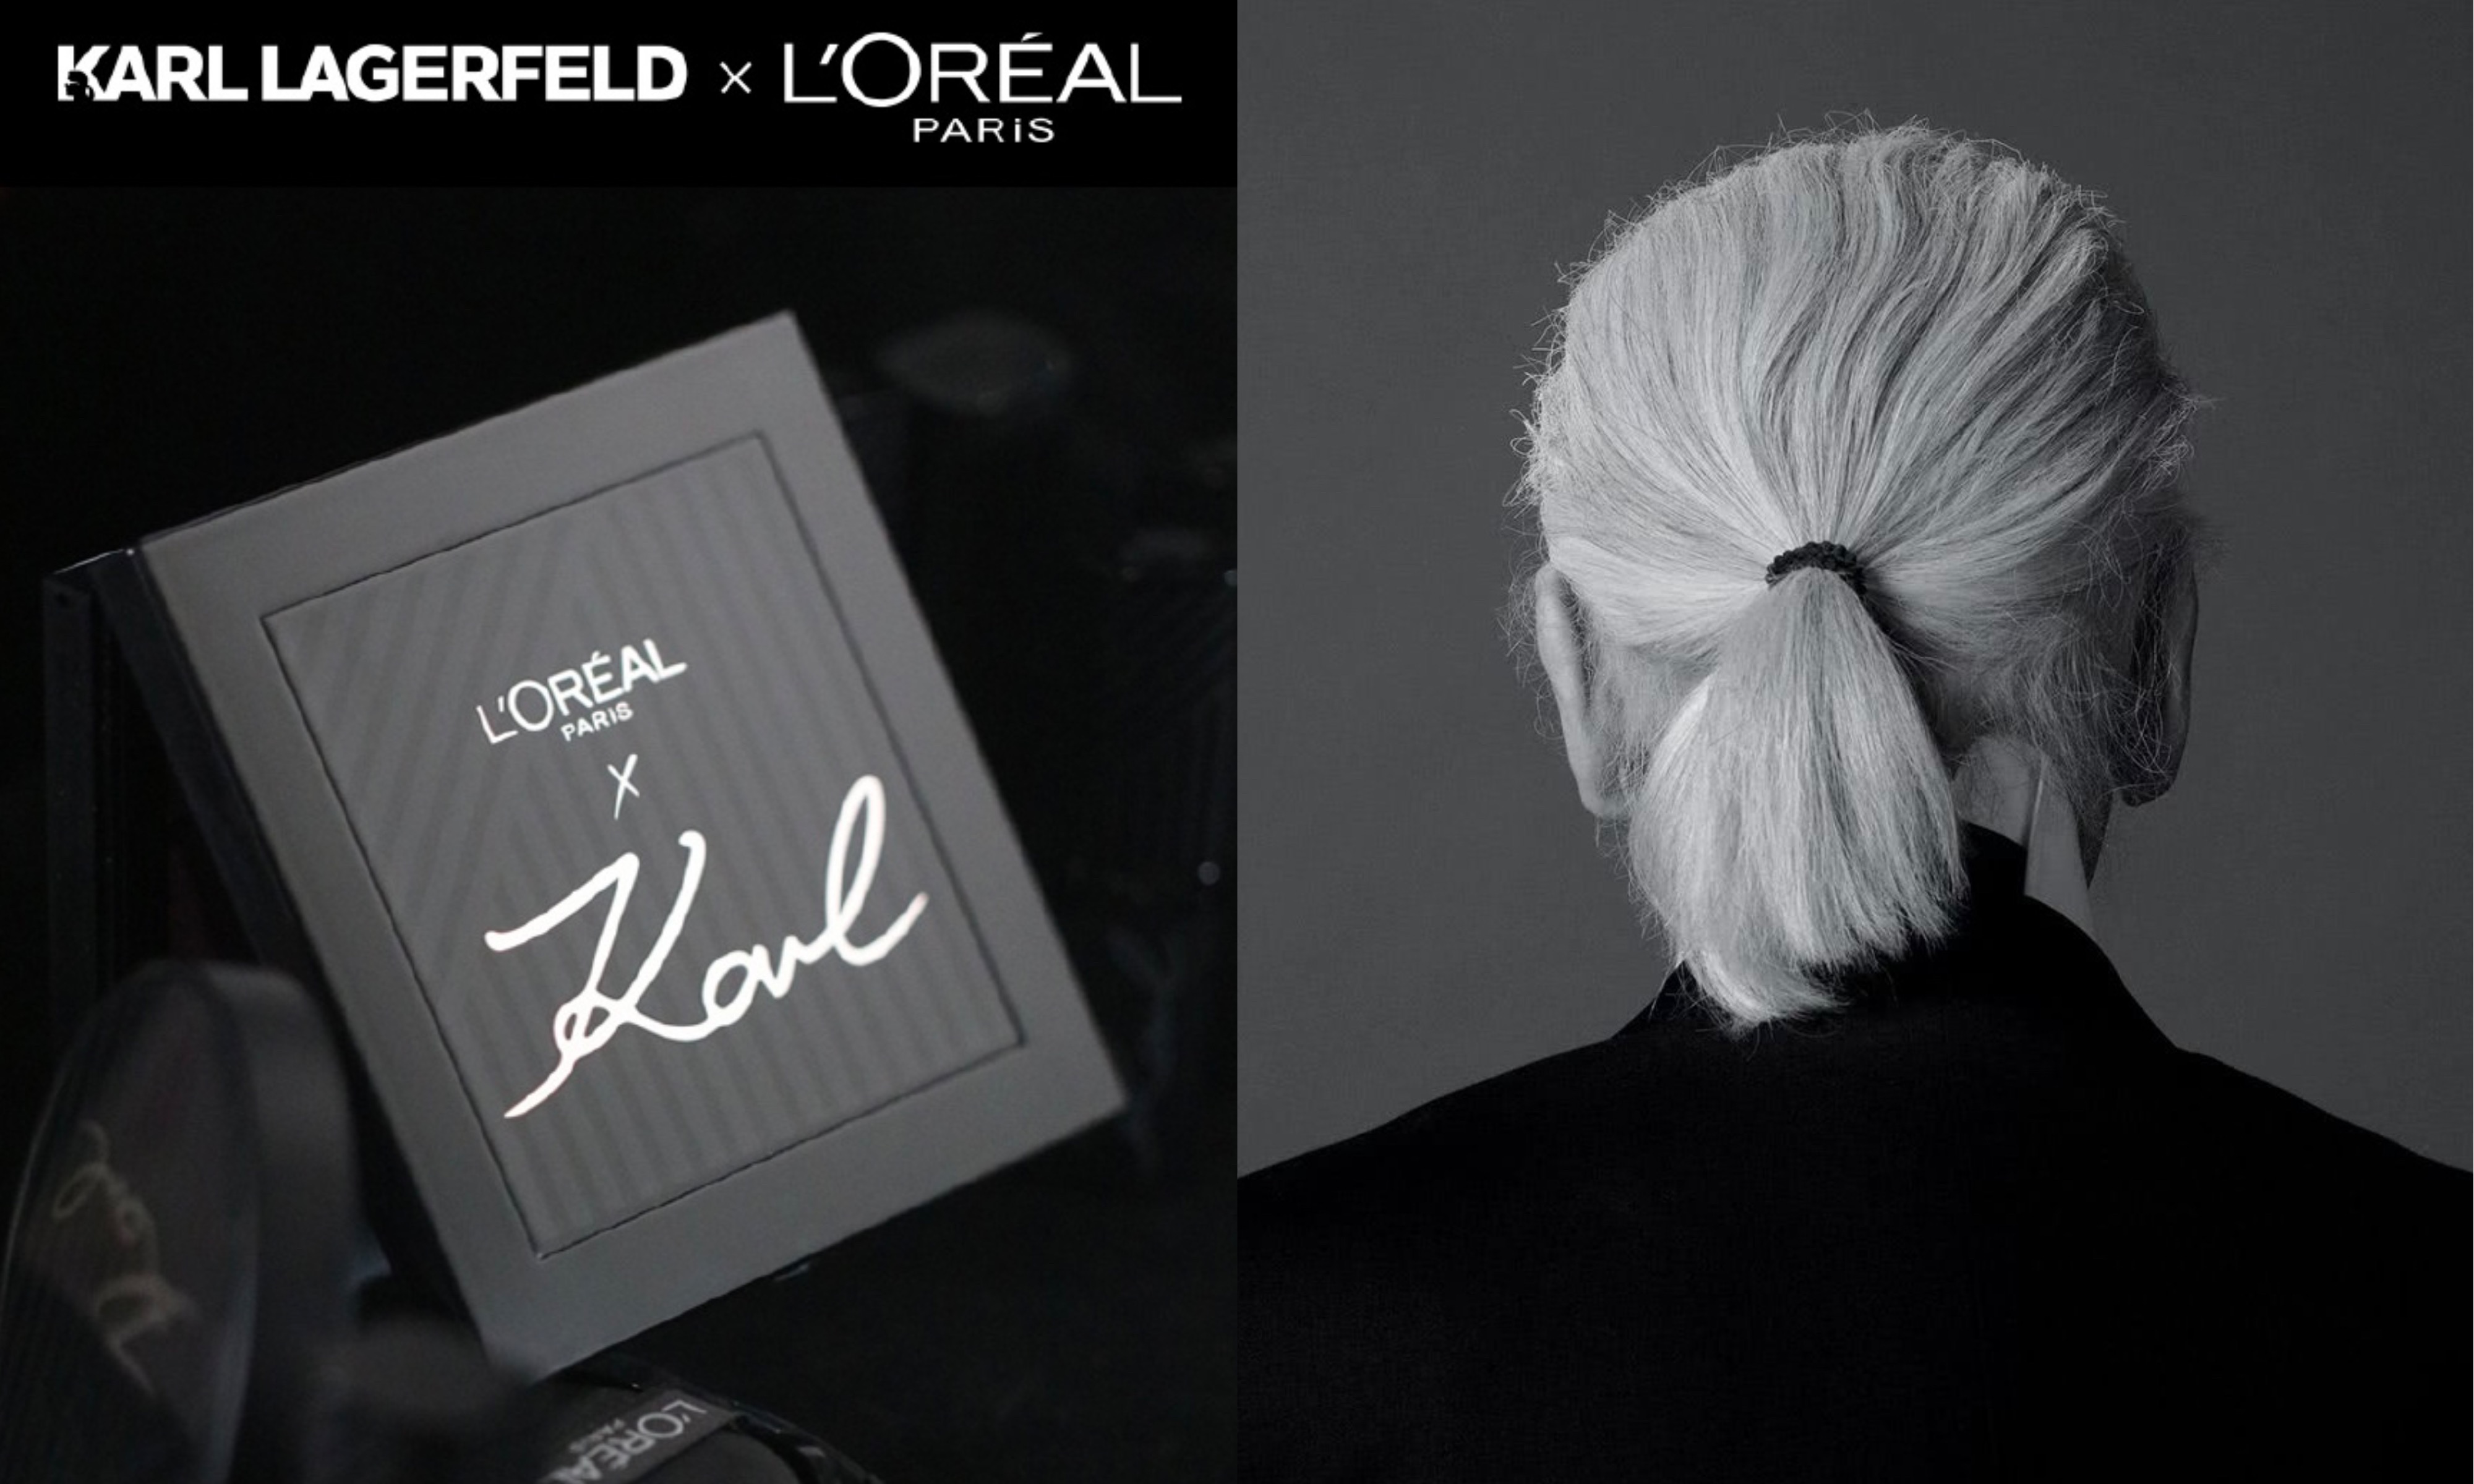 Karl Lagerfeld 与巴黎欧莱雅合作推出美妆系列产品